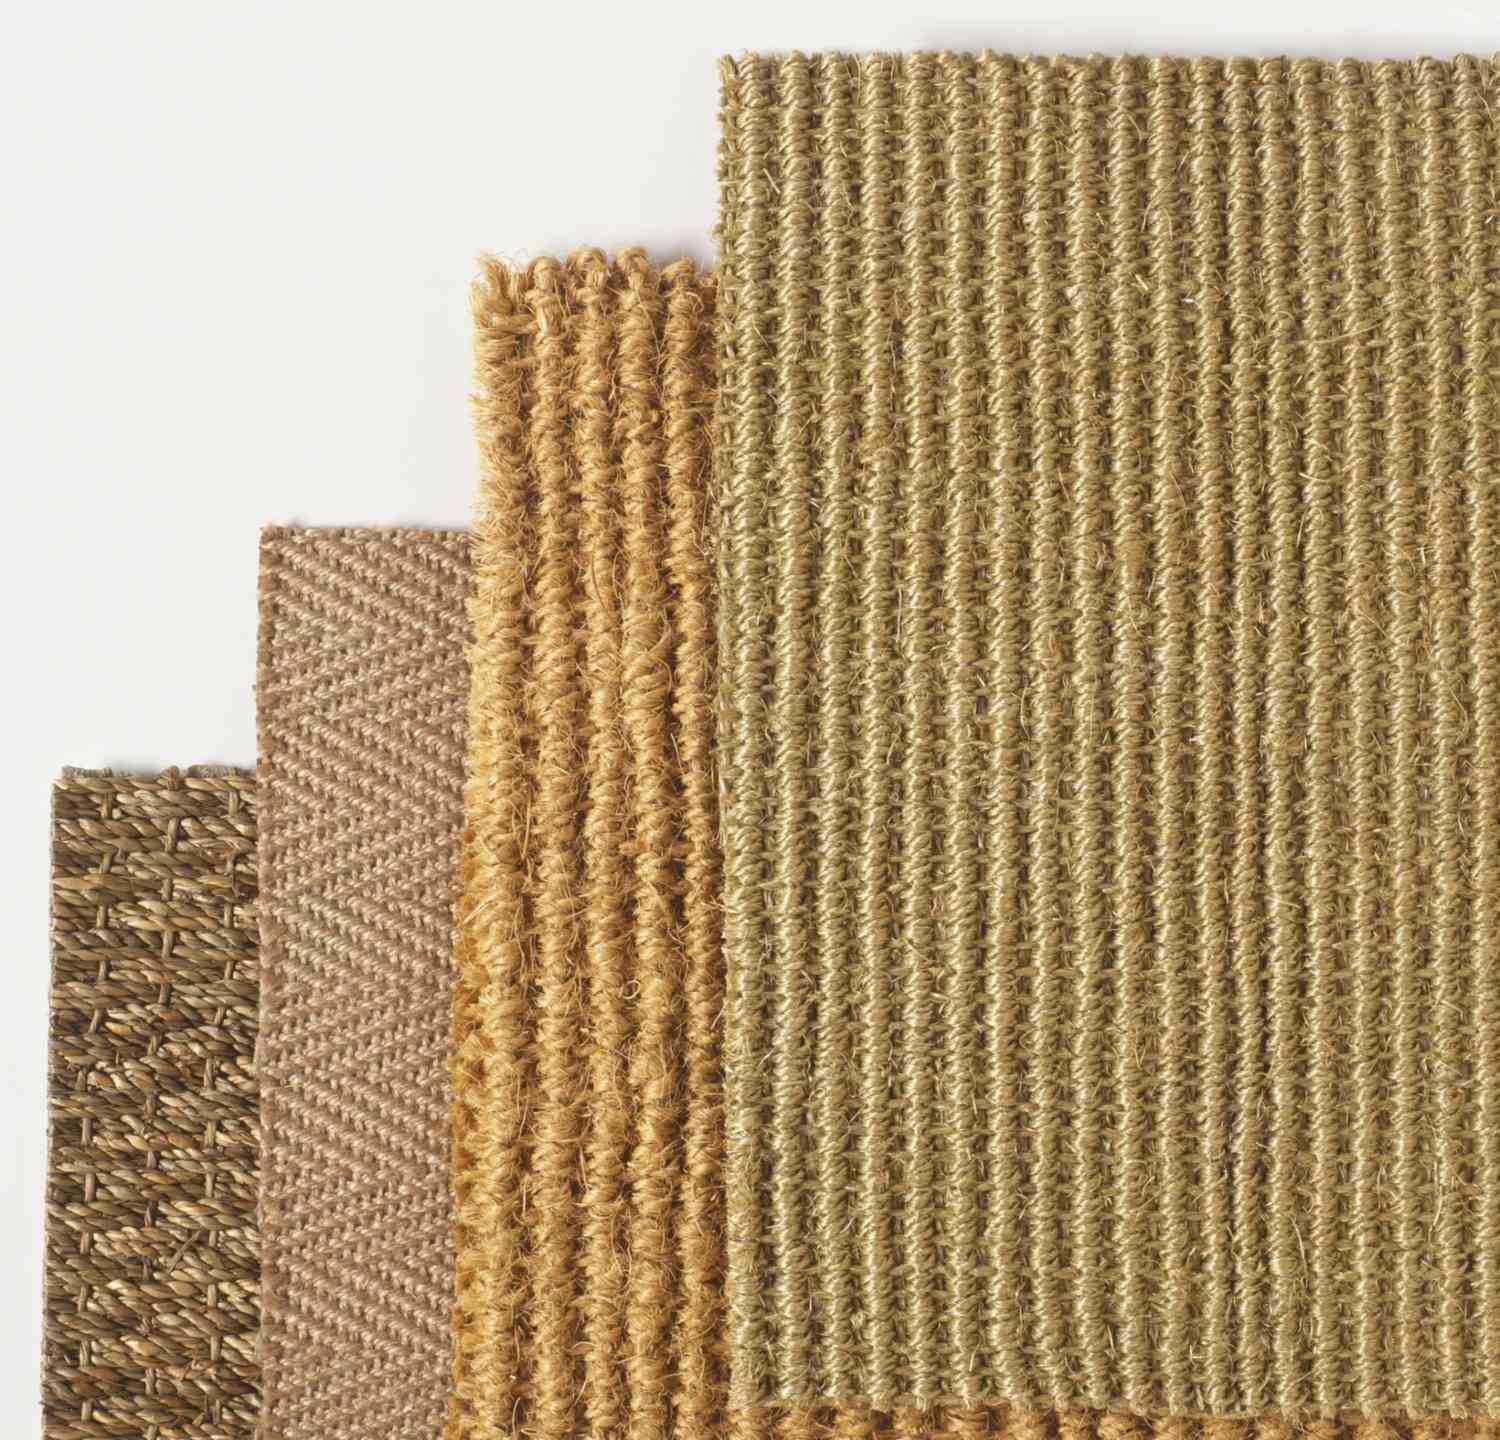 Comparação entre fibras de carpete naturais e sintéticas